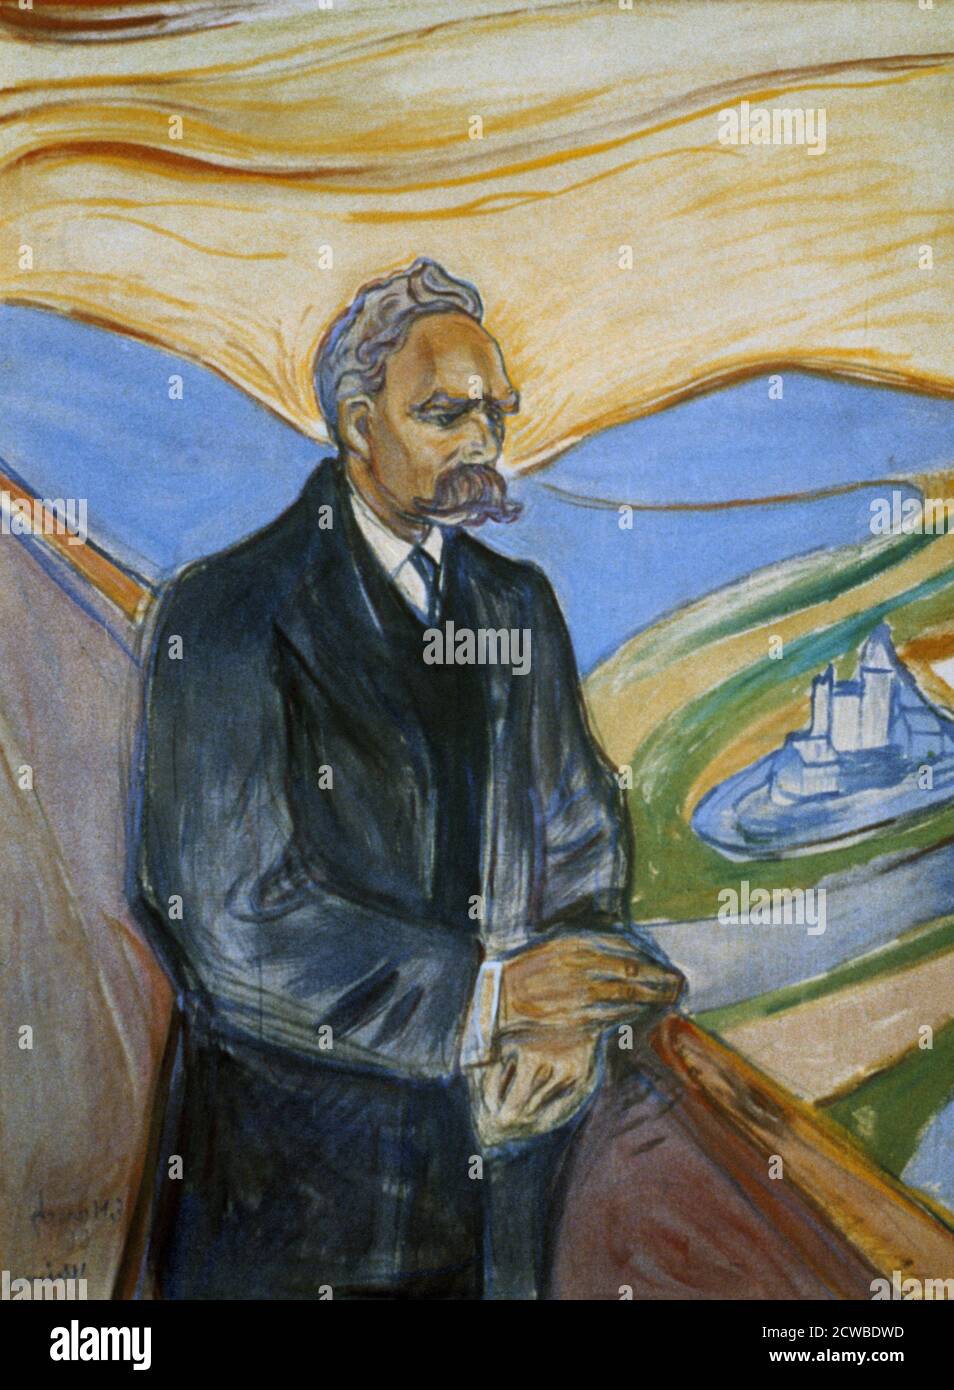 Friedrich Nietzsche', 1906 Künstler: Edvard Munch. Edvard Munch ist ein norwegischer Maler, Expressionist und Drucker. Er spielte eine große Rolle im deutschen Expressionismus. Stockfoto